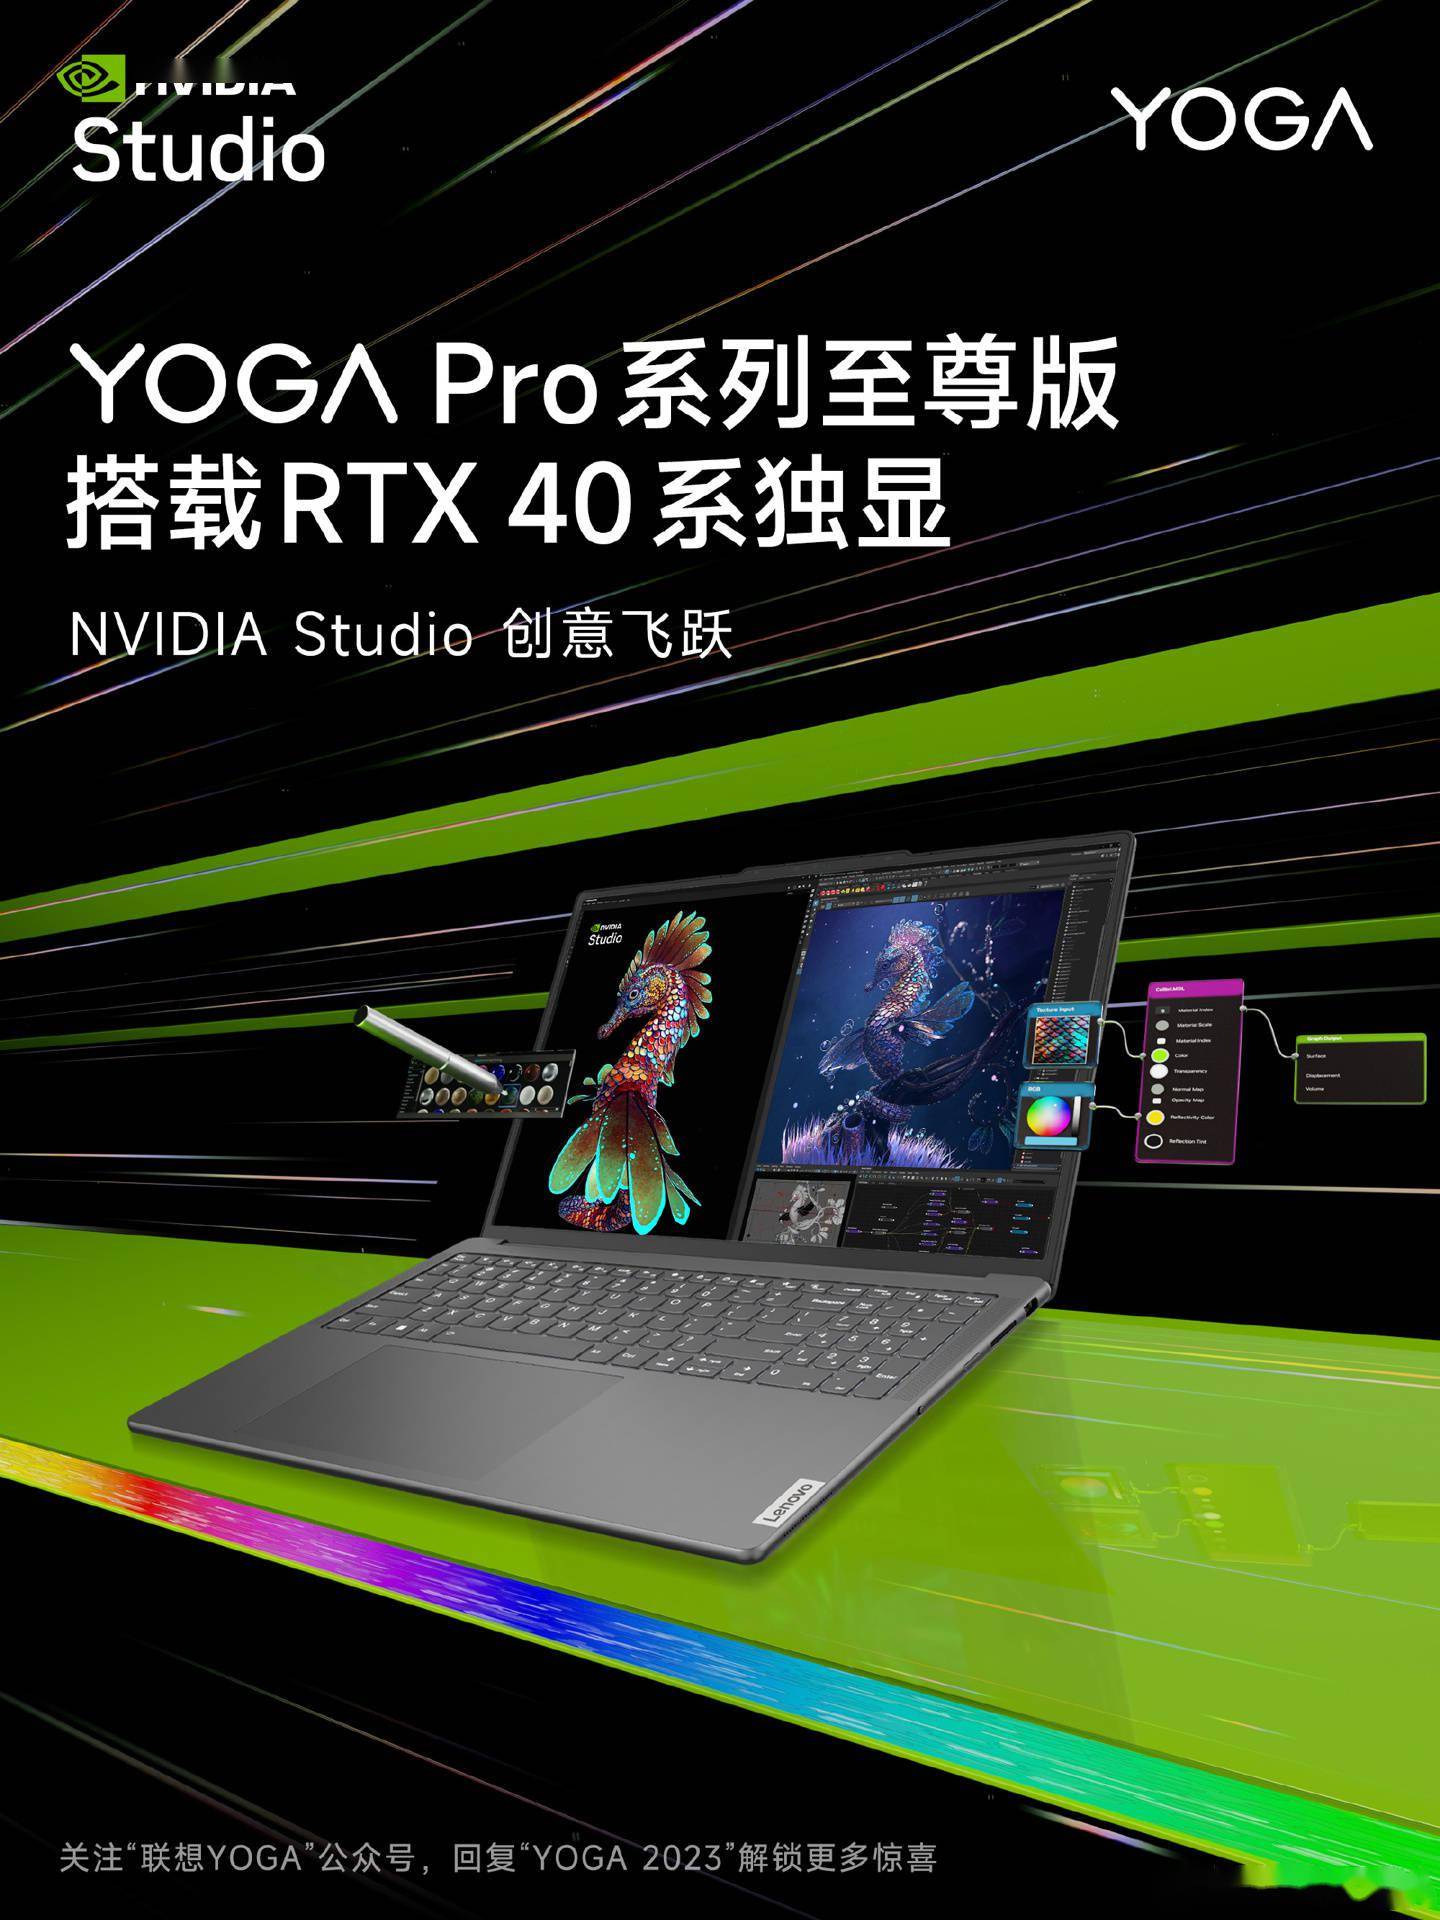 聯想 YOGA Pro 至尊版筆記本將搭載 RTX 40 獨顯    通過 NVIDIA Studio 認證